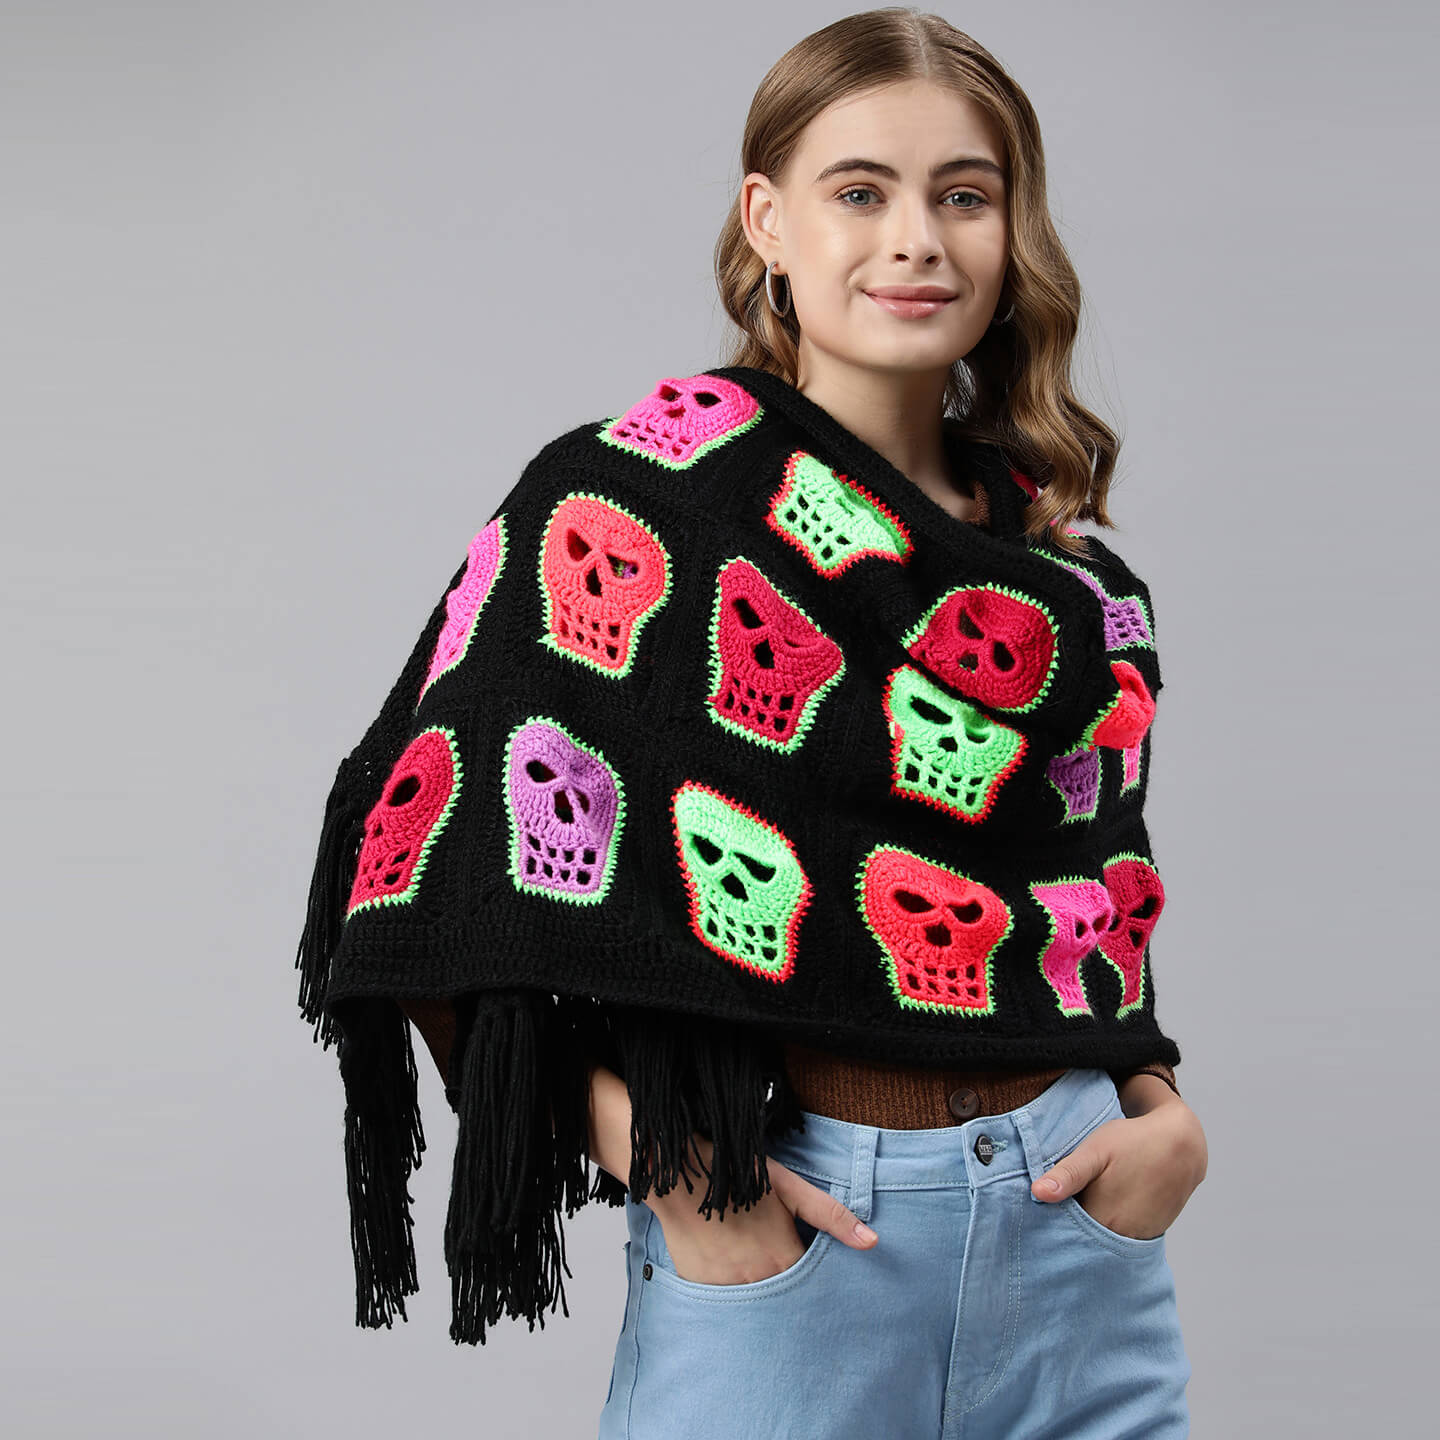 Crochet Skull Shawl with Tassles - Black 3229